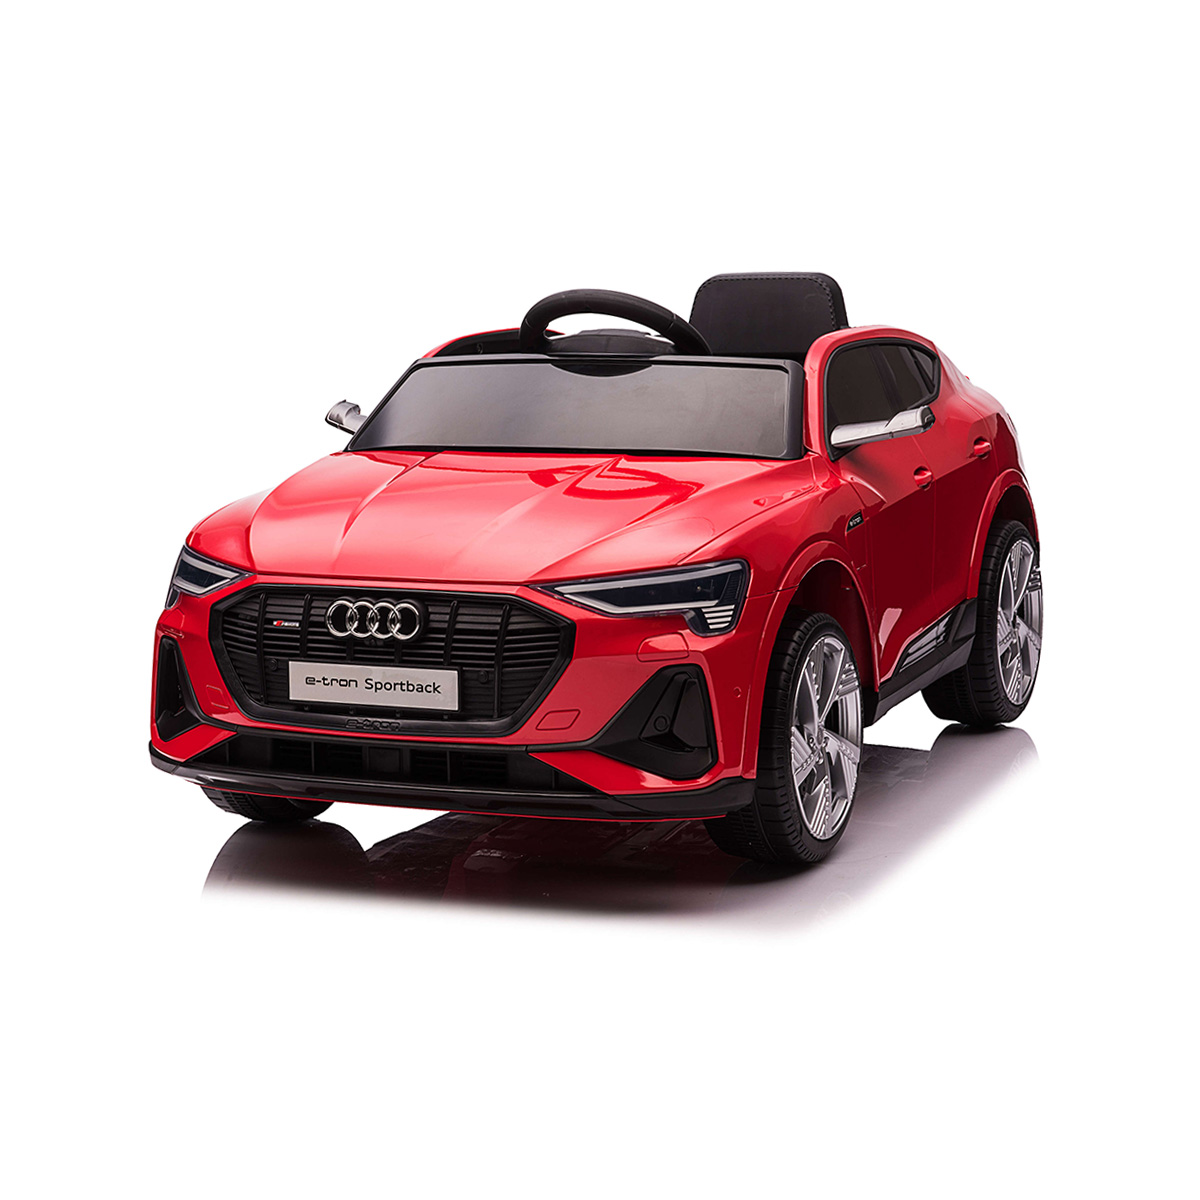 Masinuta electrica, Audi E-Tron Sportback, 12V, Rosu Masinute cu si fara pedale 2023-09-26